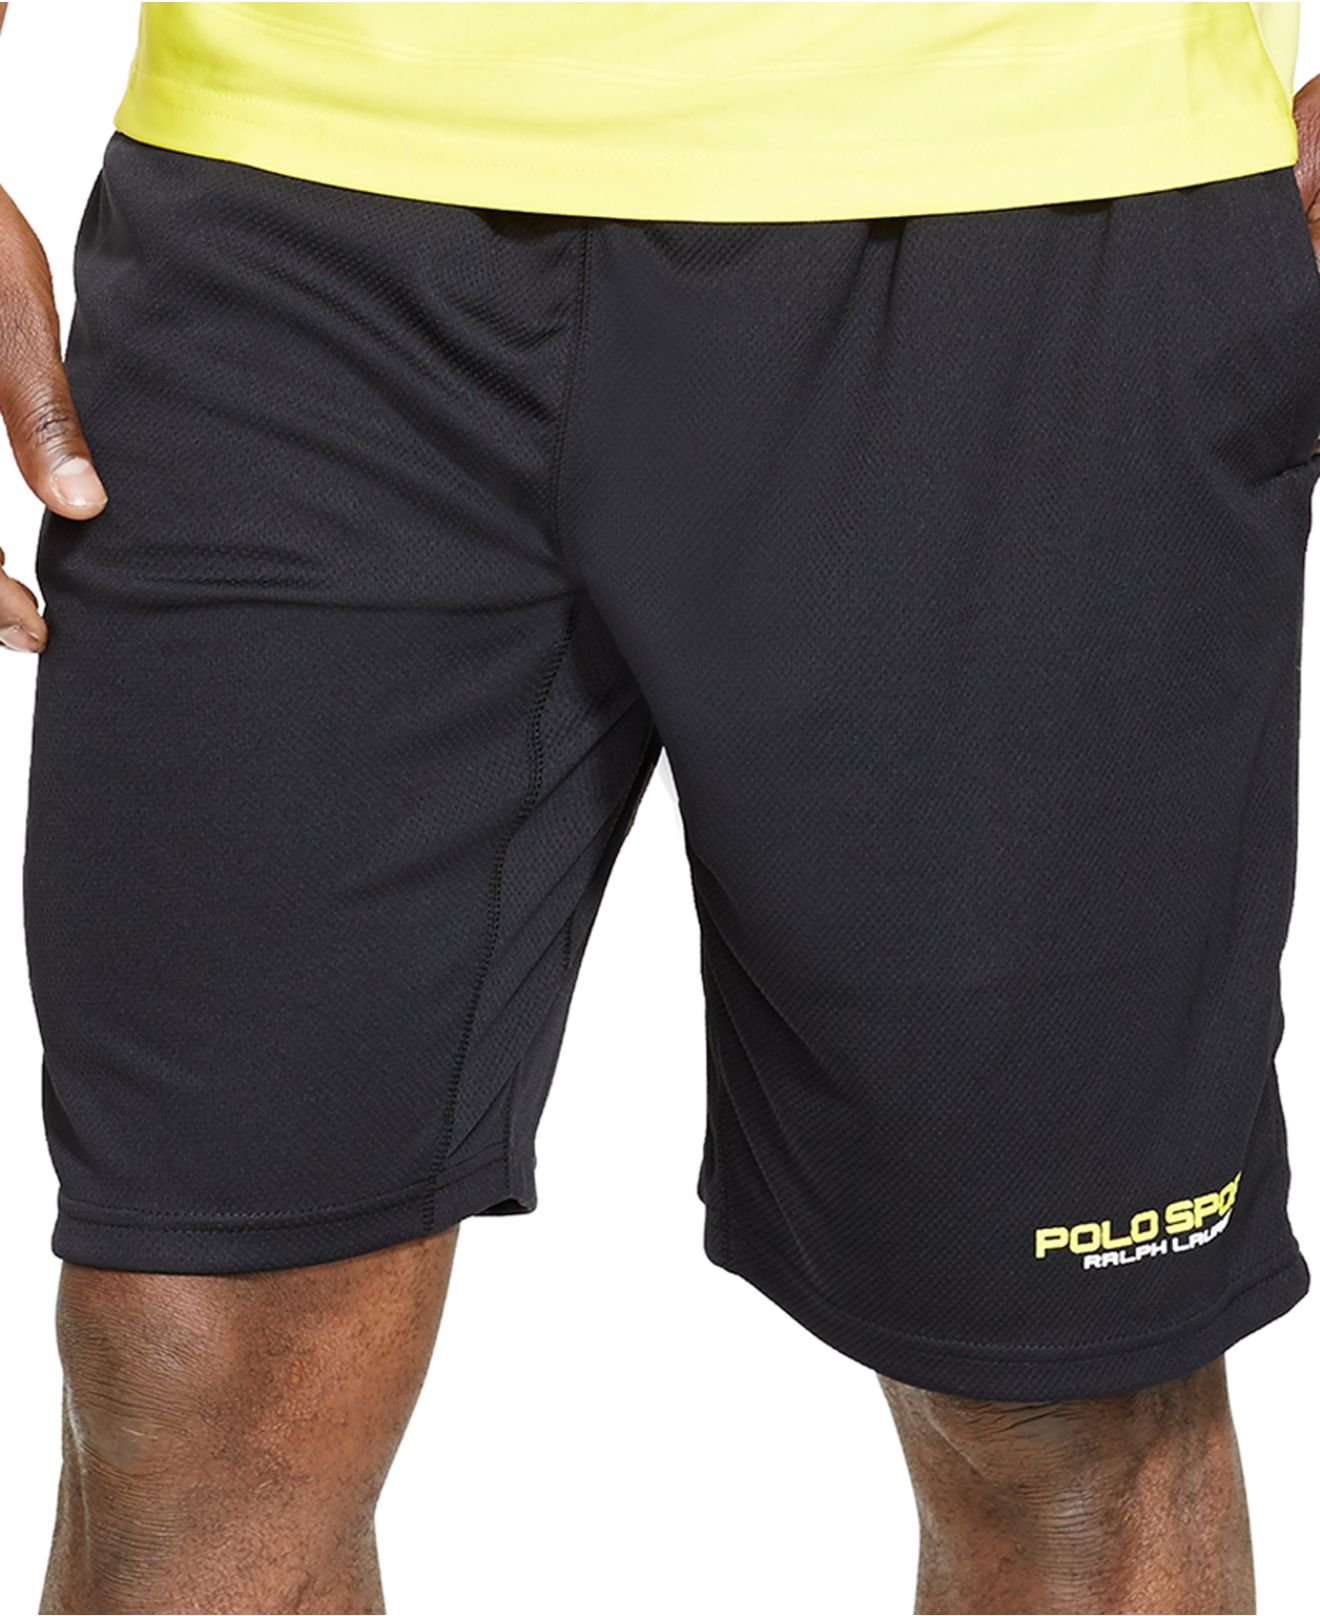 ralph lauren active shorts